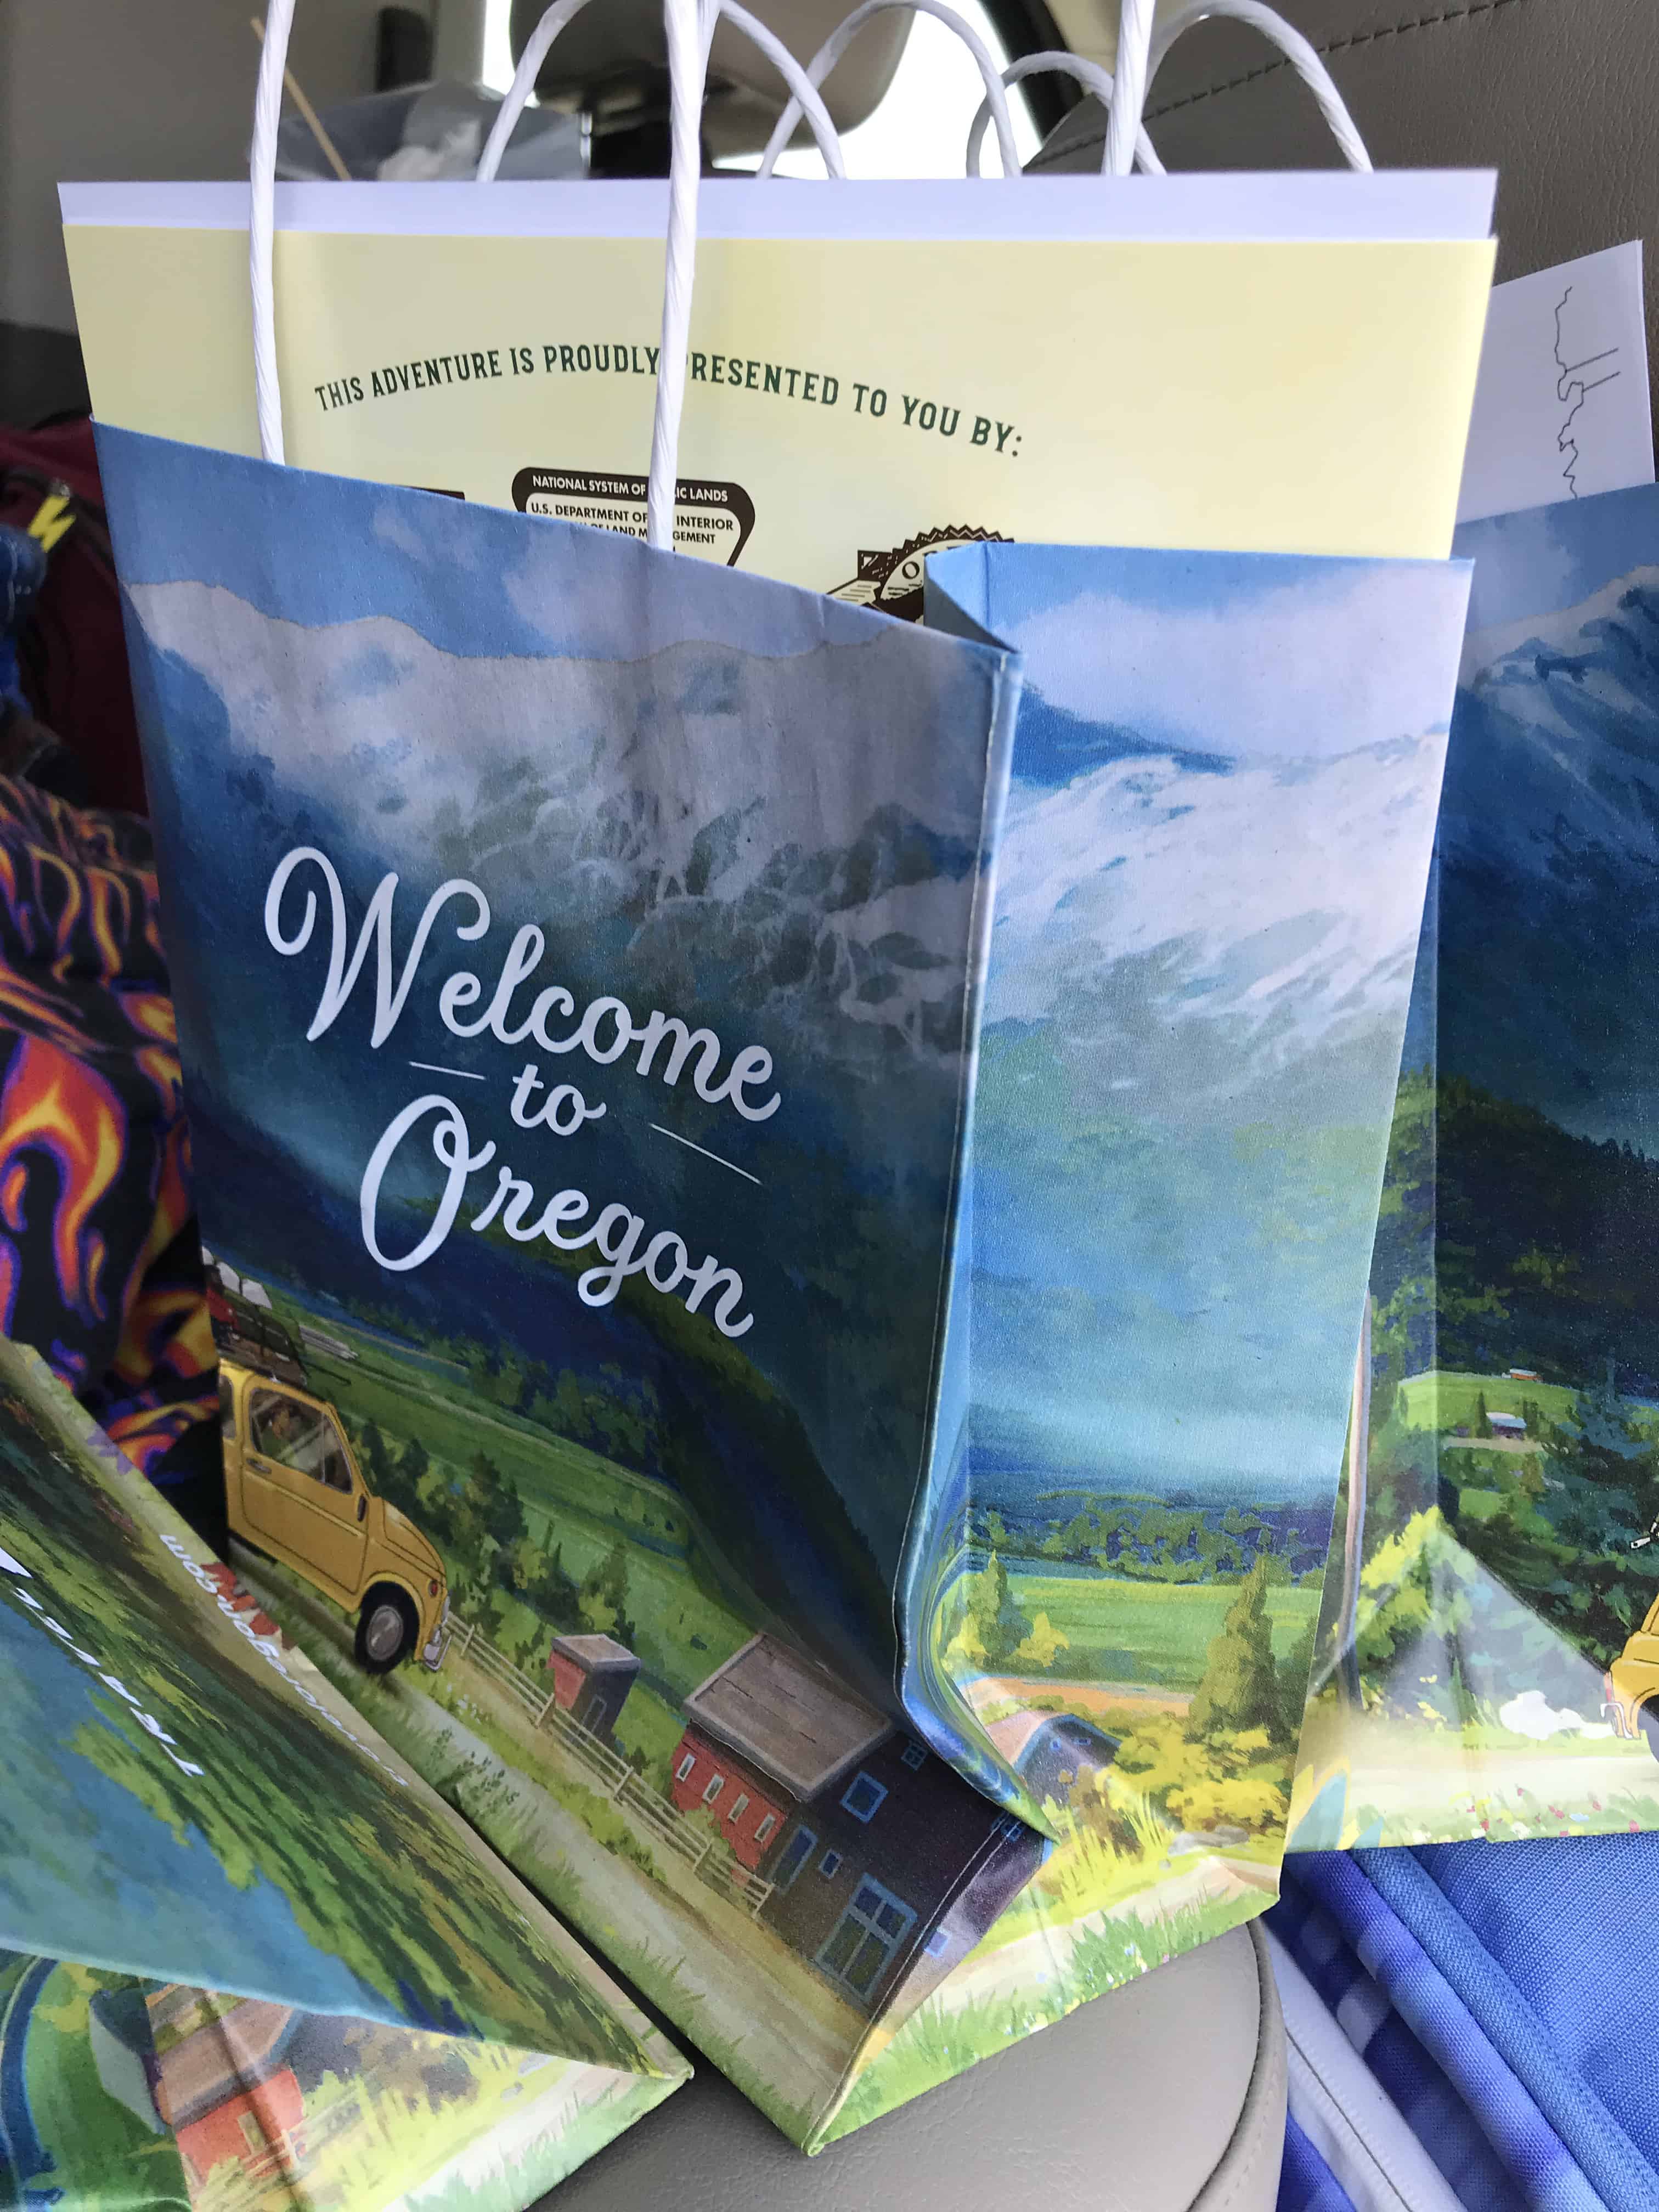 Gift bag says "Welcome to Oregon"